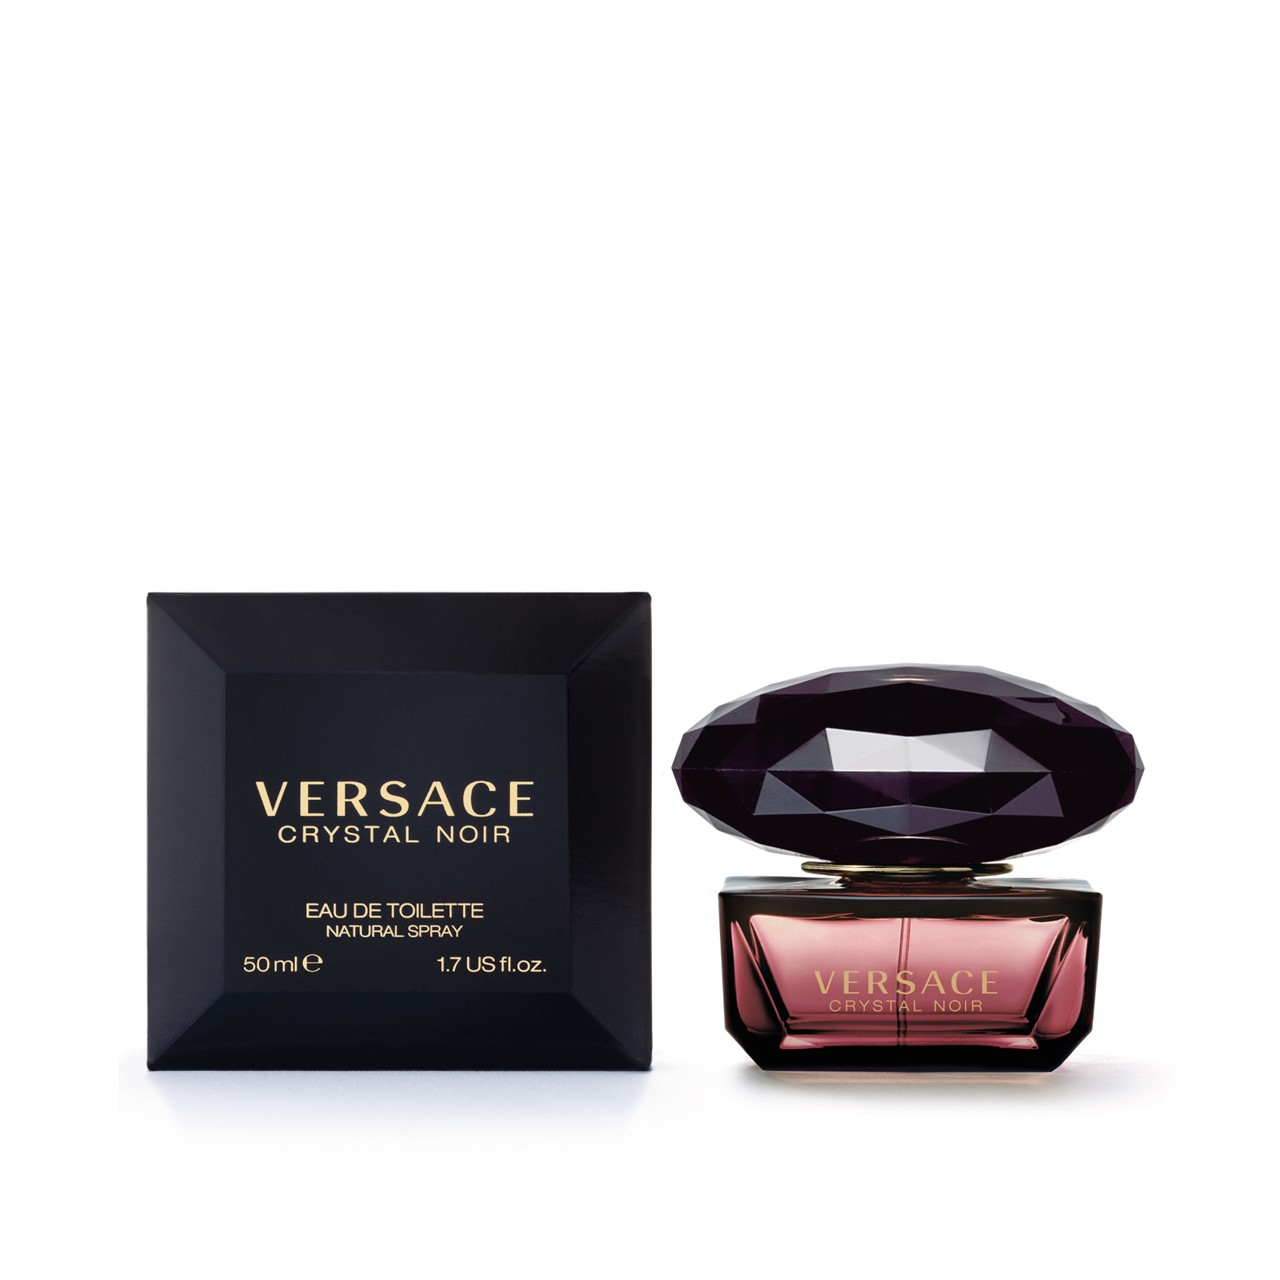 Versace Crystal Noir Eau de Toilette 50ml (1.7fl.oz.)